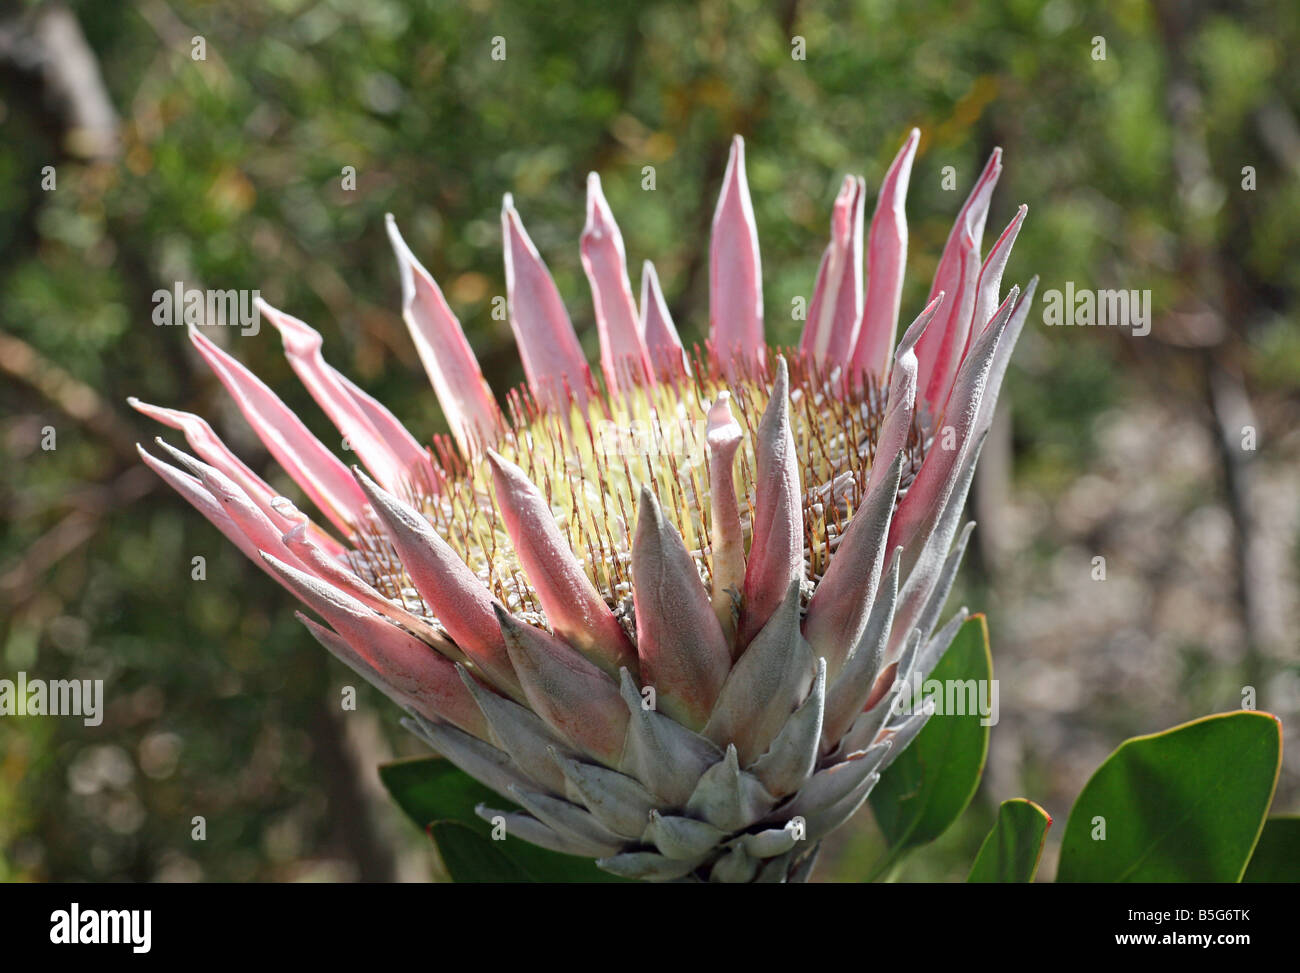 Testa di fiore più grande immagini e fotografie stock ad alta risoluzione -  Alamy